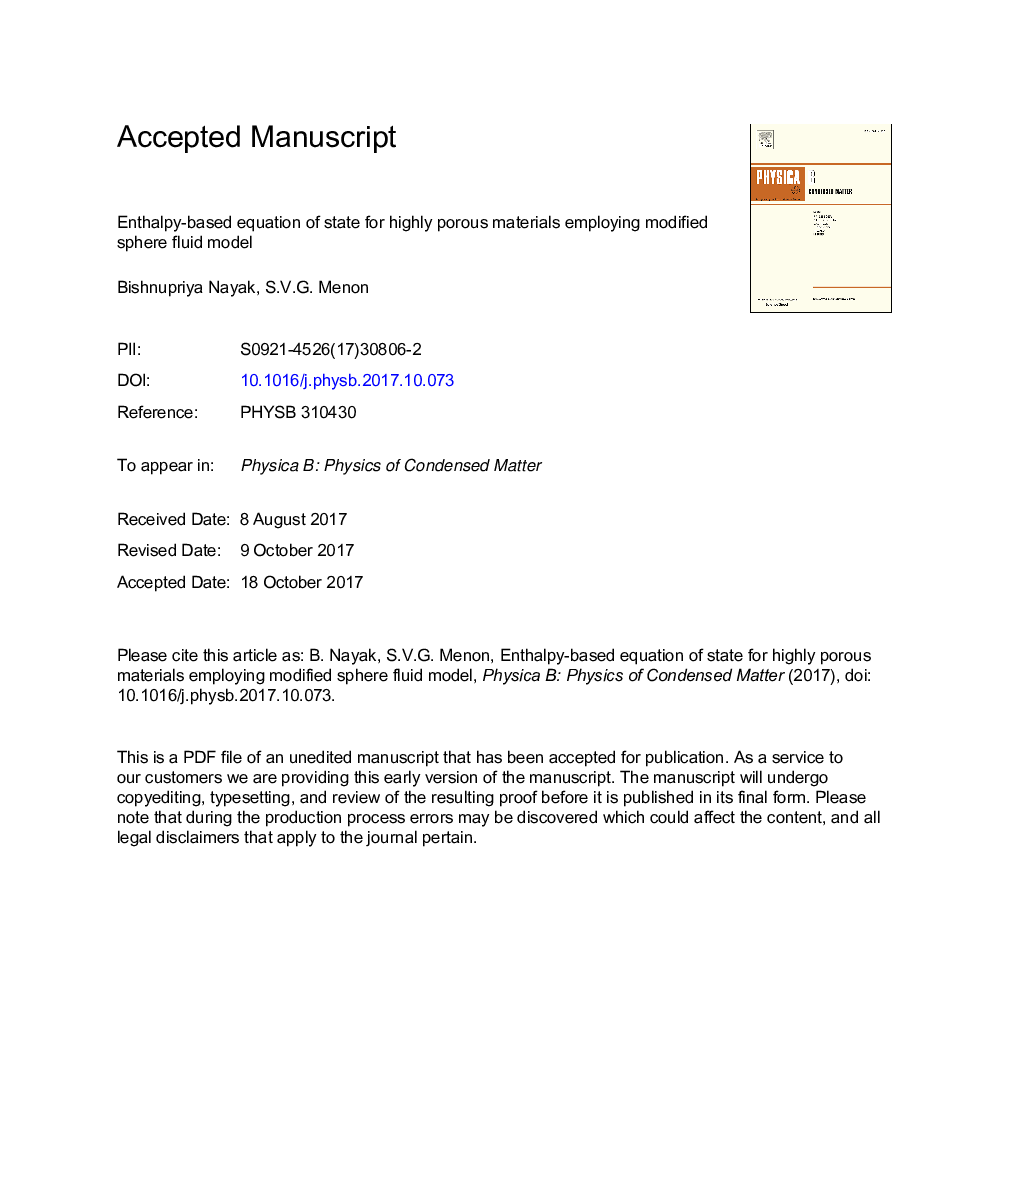 معادله حالت مبتنی بر انتالپی برای مواد بسیار متخلخل با استفاده از مدل اصلاح شده نرم کروم نرم 